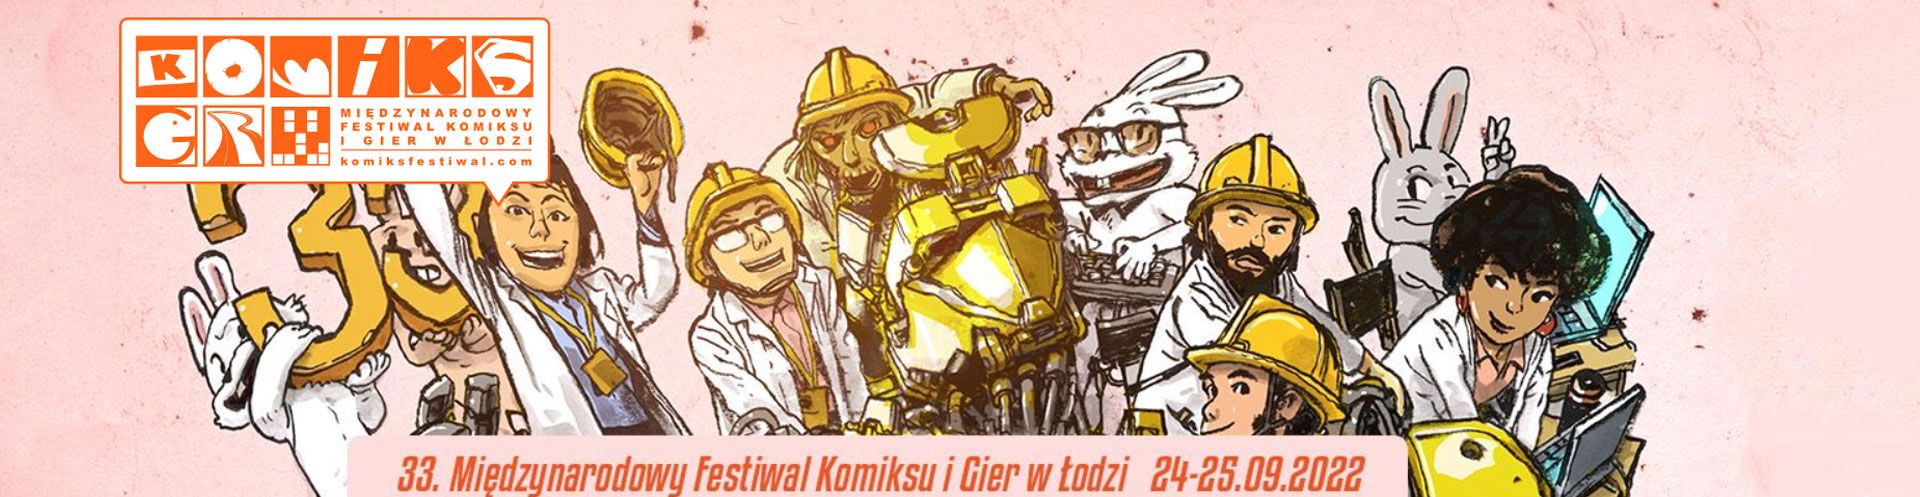 Miedzynarodowy festiwal komiksu i gier w Lodzi